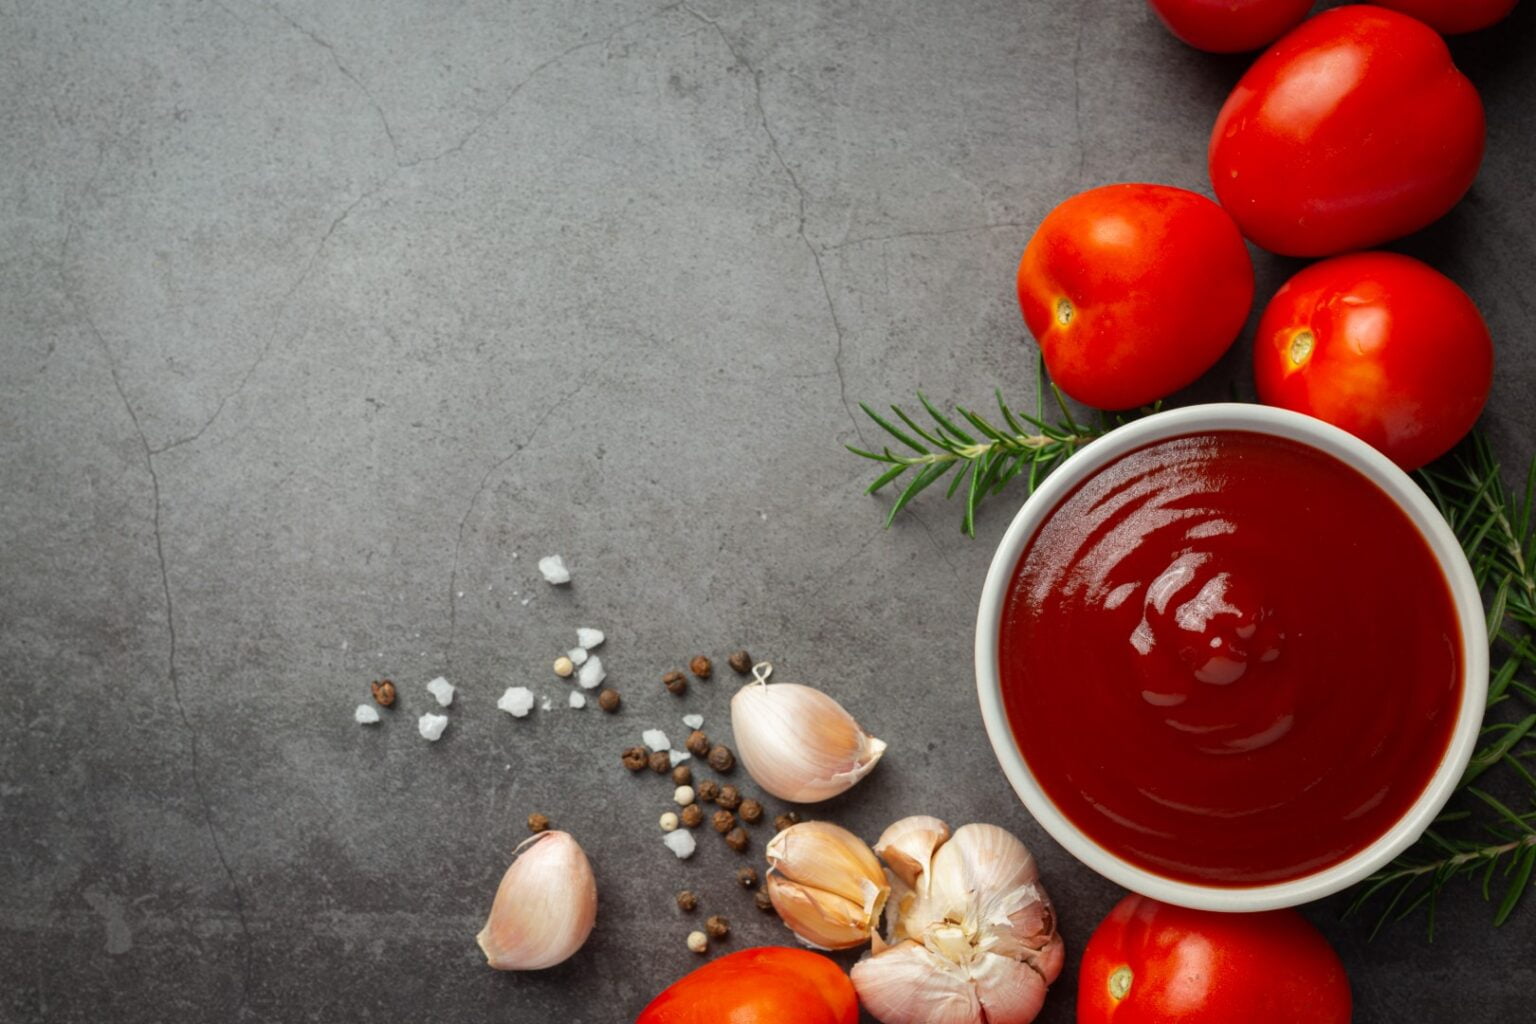 كيف يصنع كاتشب الطماطم